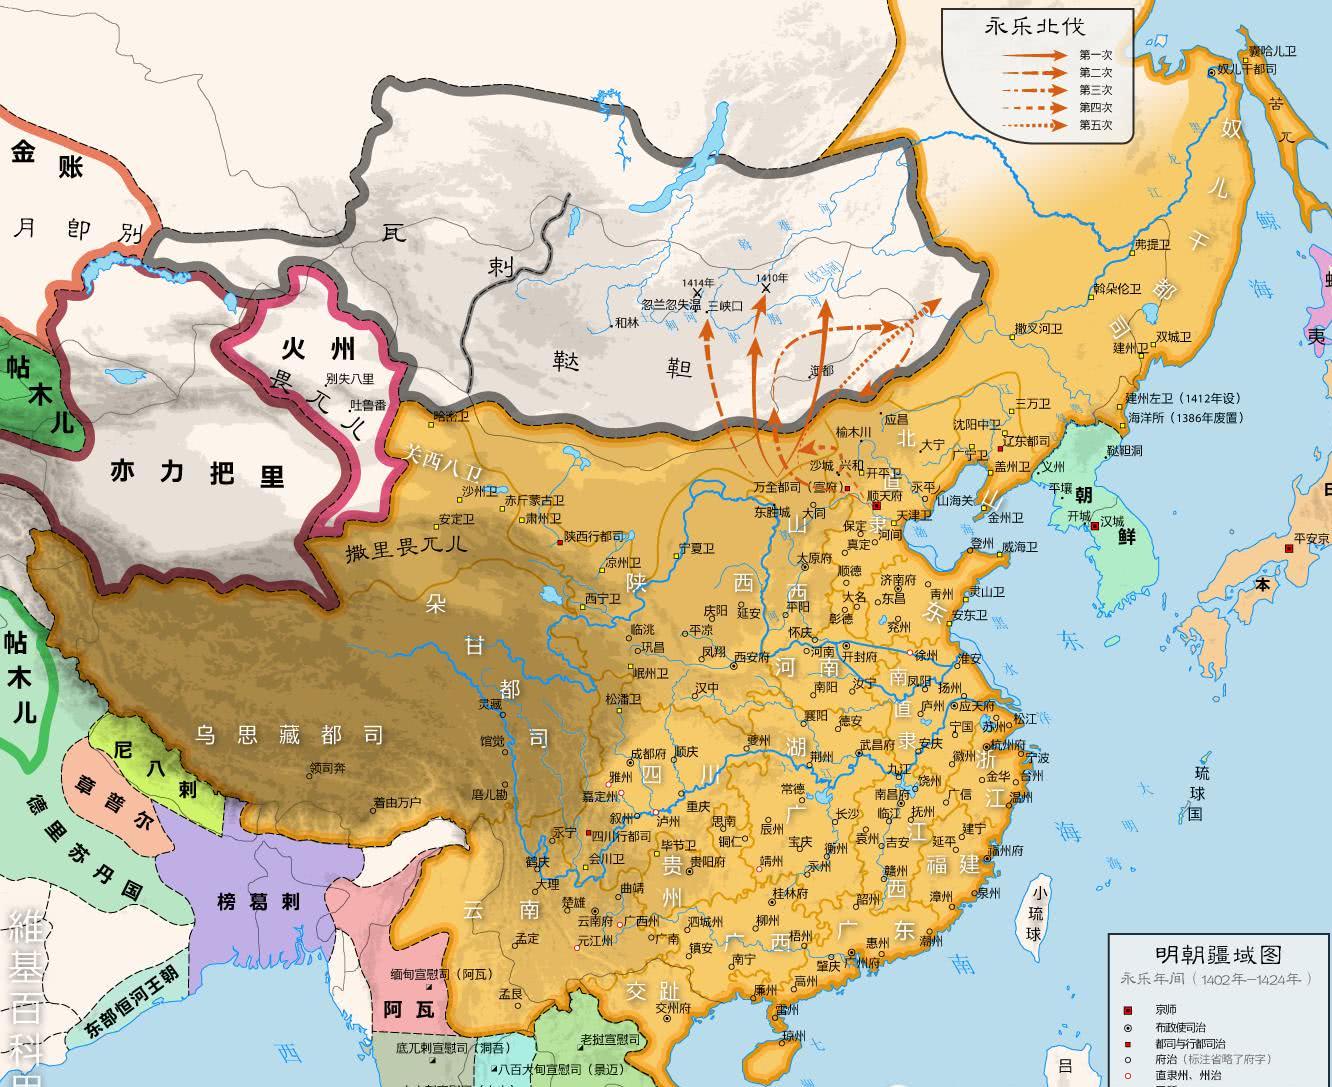 越南这个朝代不把中国放在眼里,最后朱棣领军消灭,设立为新省份